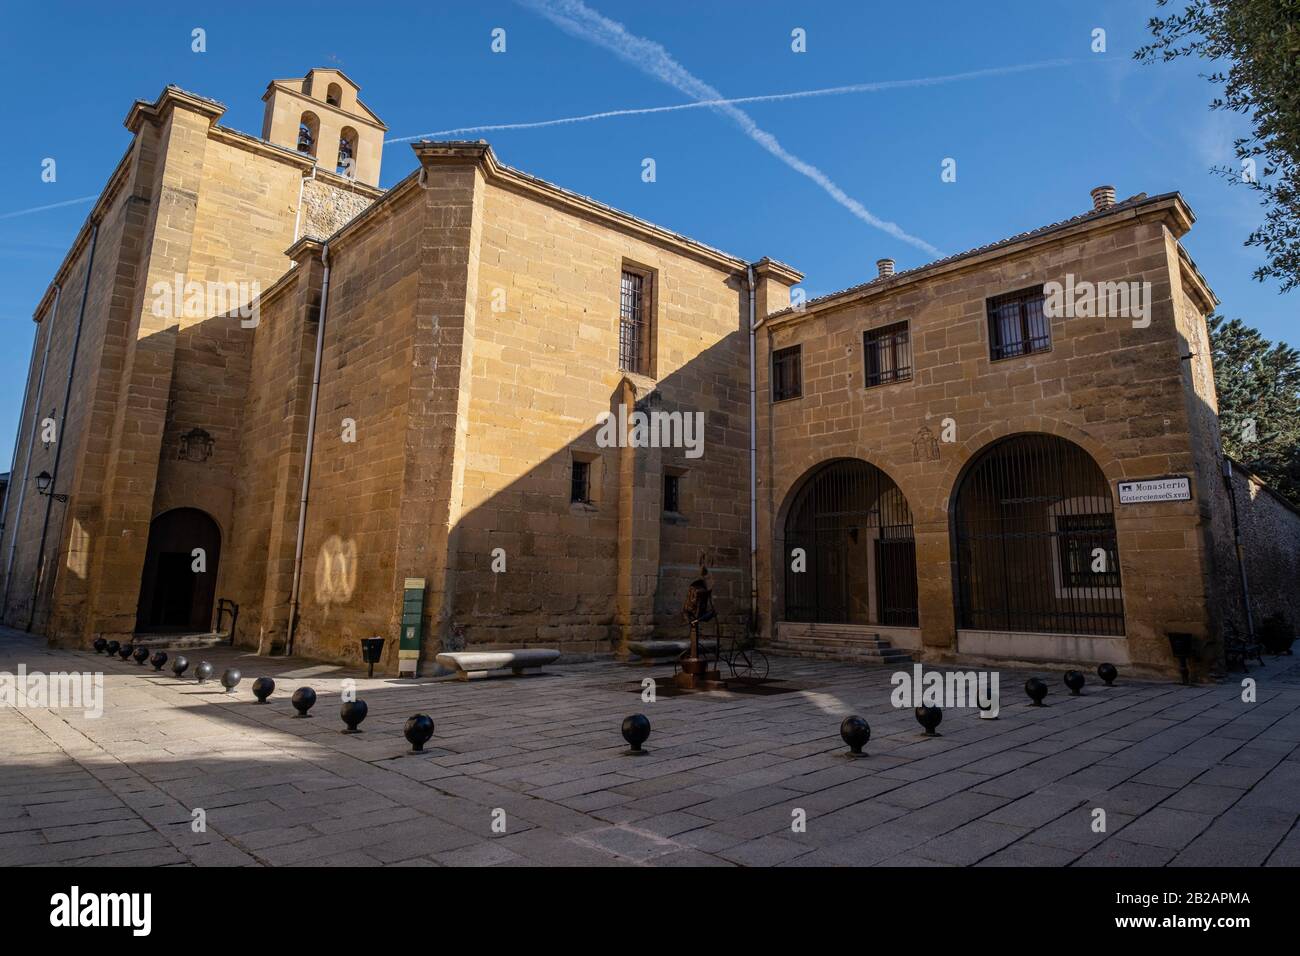 Monasterio de Nuestra Señora de la Anunciación, cisterciense, siglo XVII, Santo  Domingo de la Calzada, La Rioja, Spain Stock Photo - Alamy